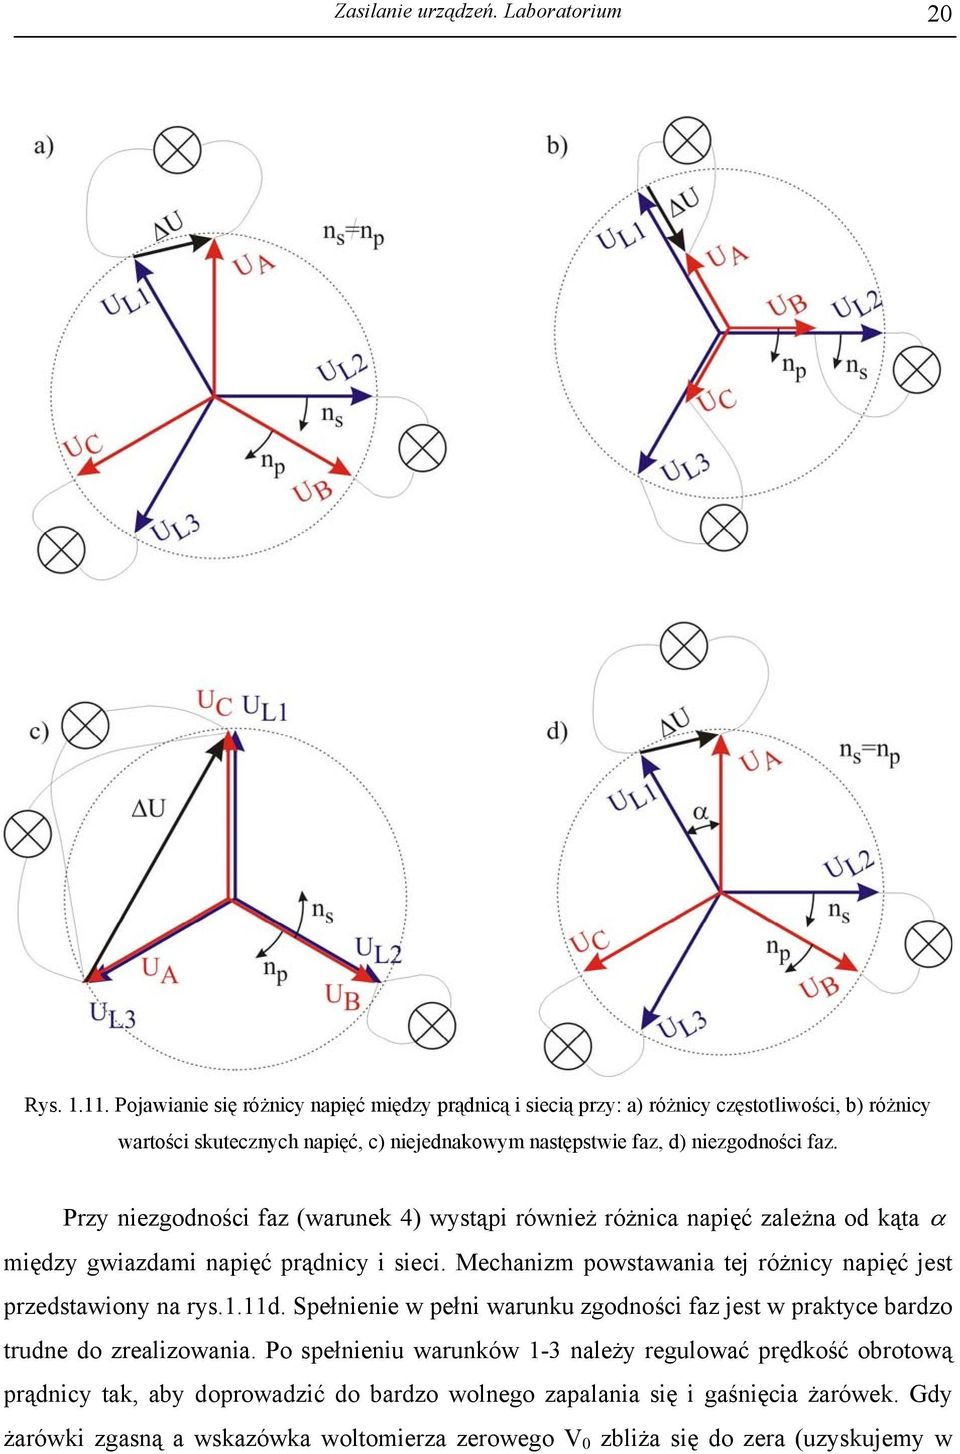 Przy niezgodności faz (warunek 4) wystąpi również różnica napięć zależna od kąta α między gwiazdami napięć prądnicy i sieci.